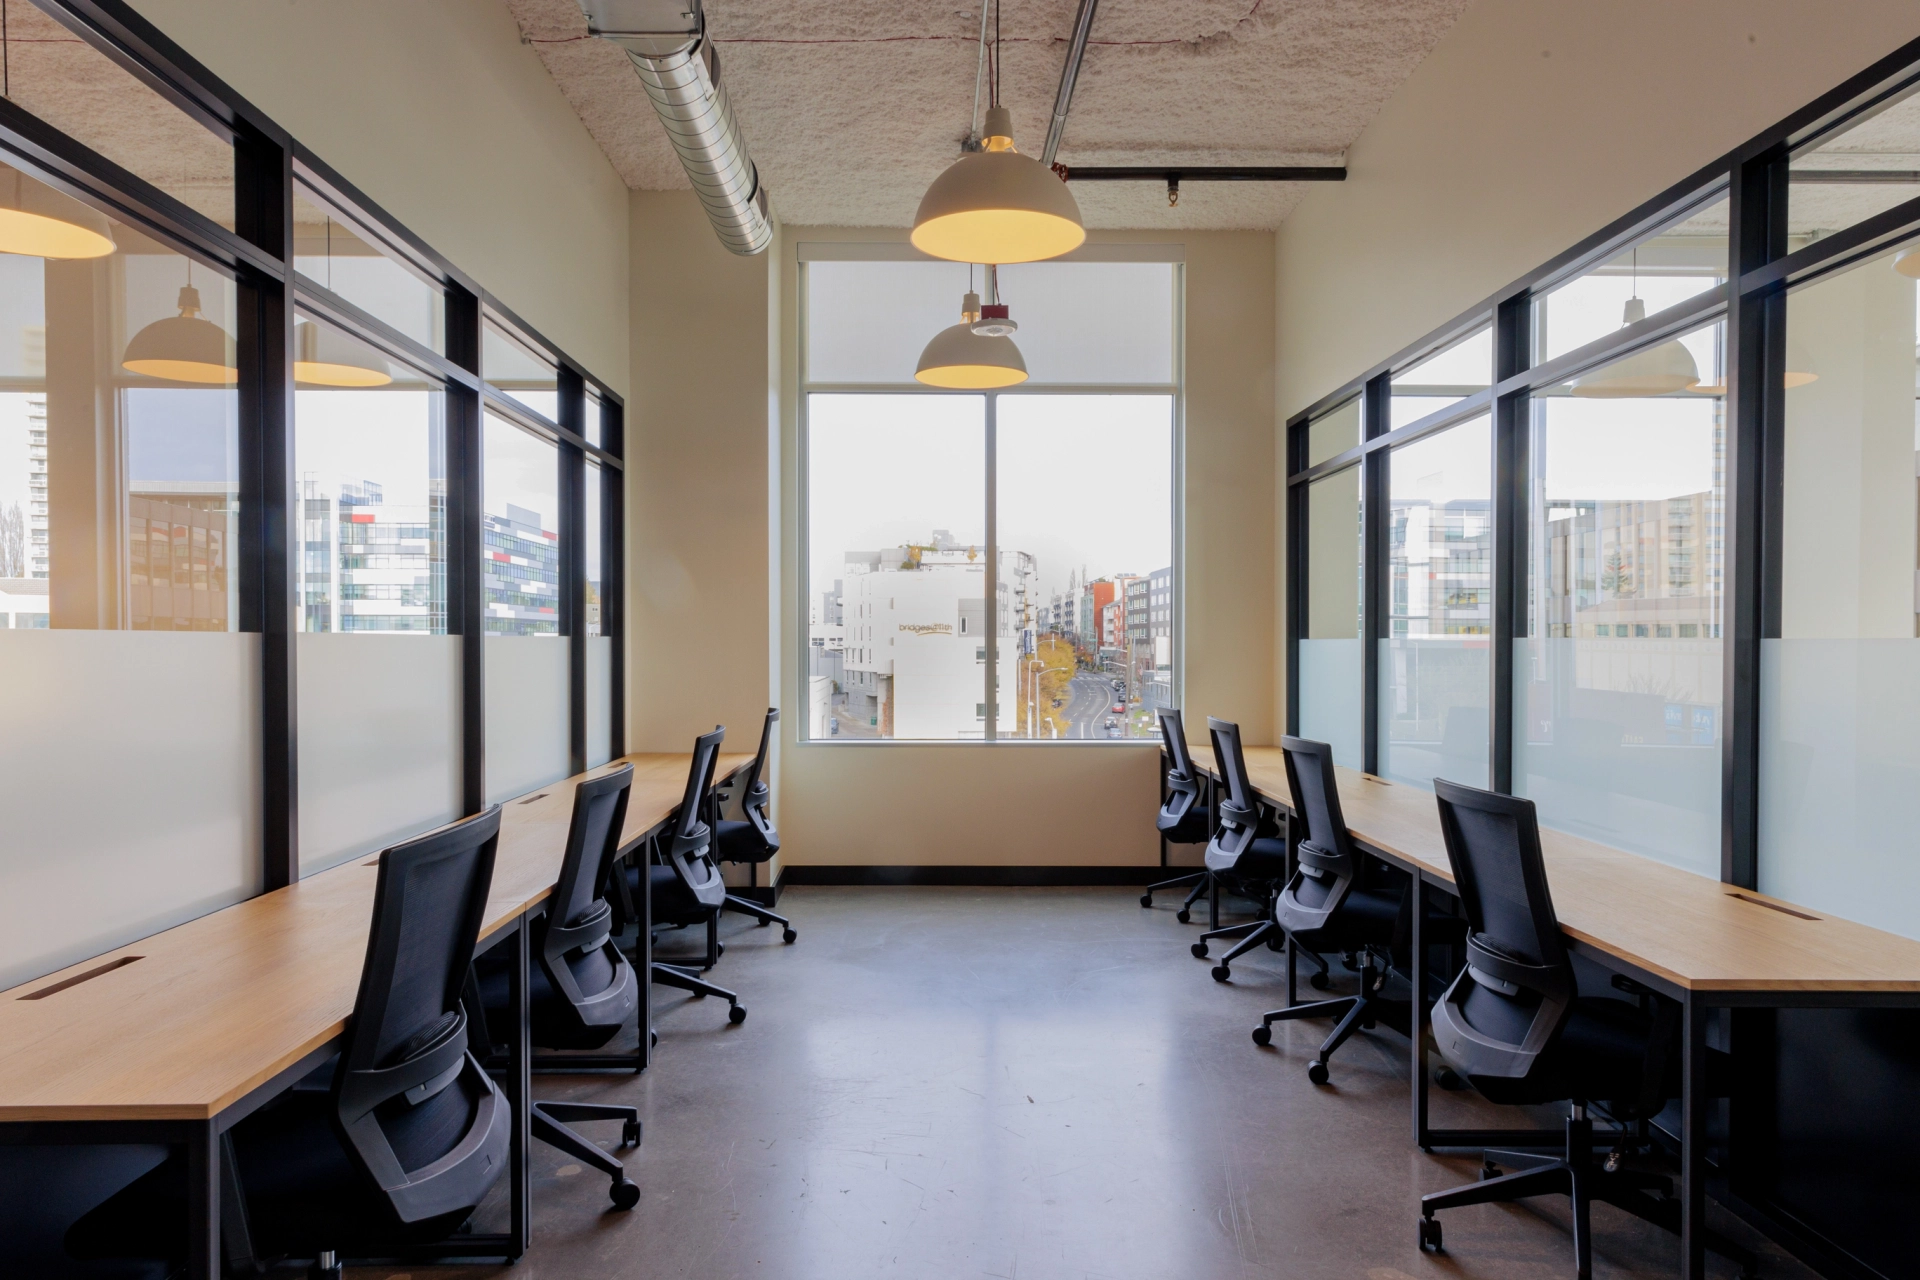 Moderne kantoorruimte met lege stoelen en tafels, met grote ramen met uitzicht op de stad, ontworpen voor coworking.